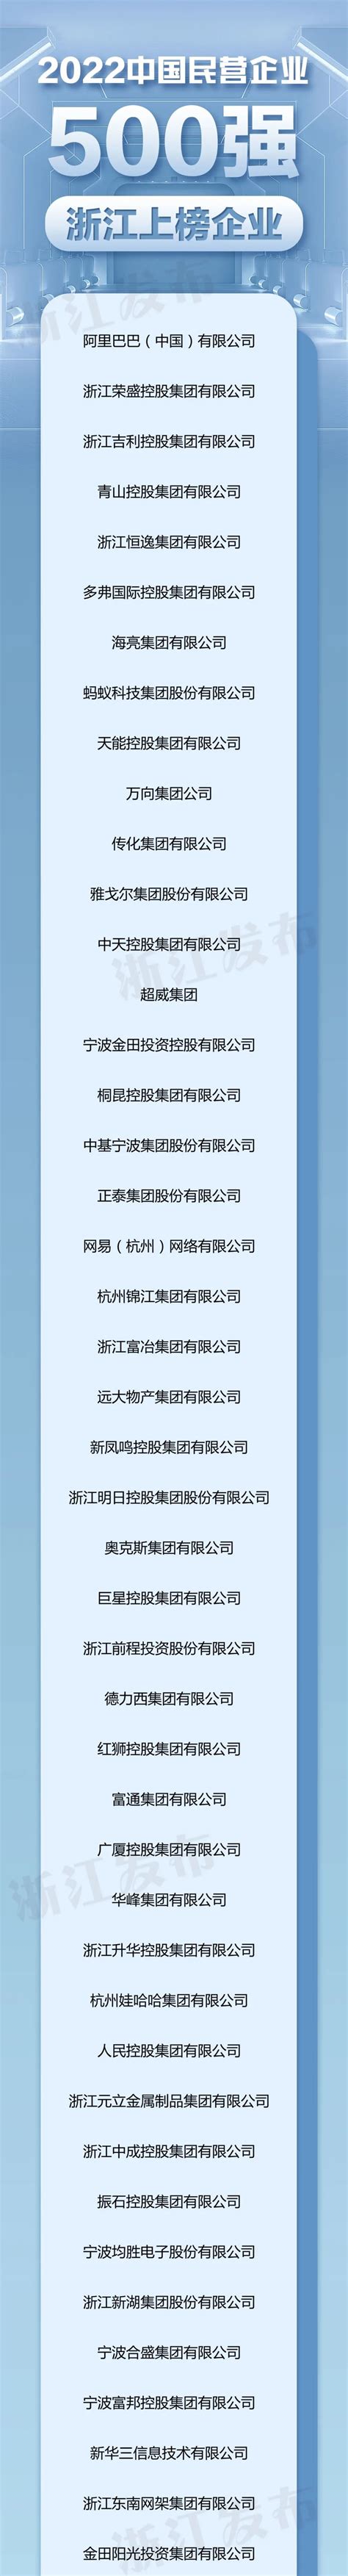 保卫处党支部组织参观锦州苹果园廉政文化展览馆-企业名称